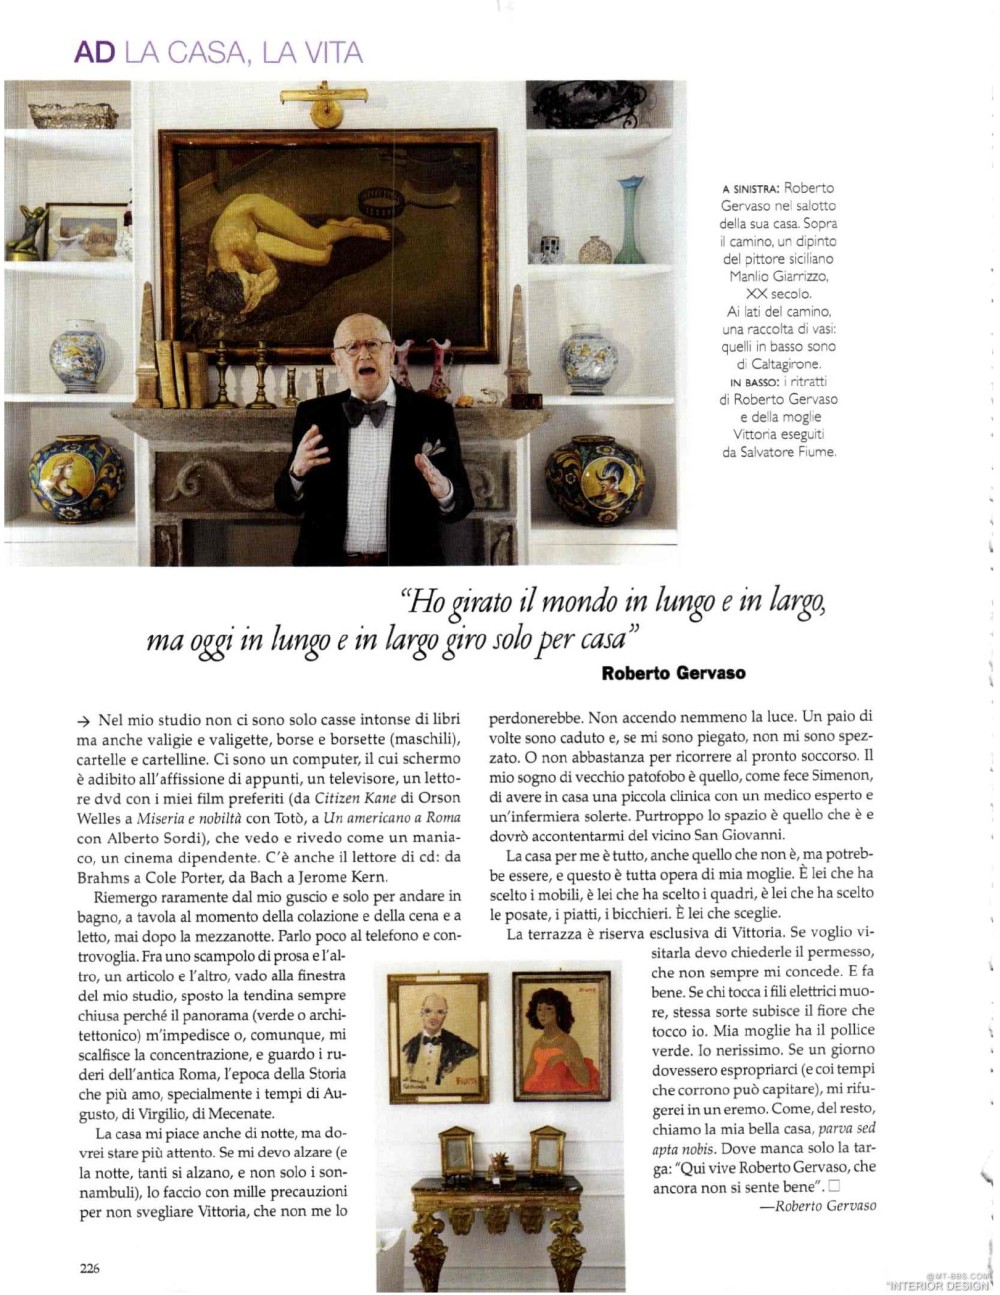 意大利AD 杂志 2012年全年JPG高清版本 全免（上传完毕）_0228.jpg